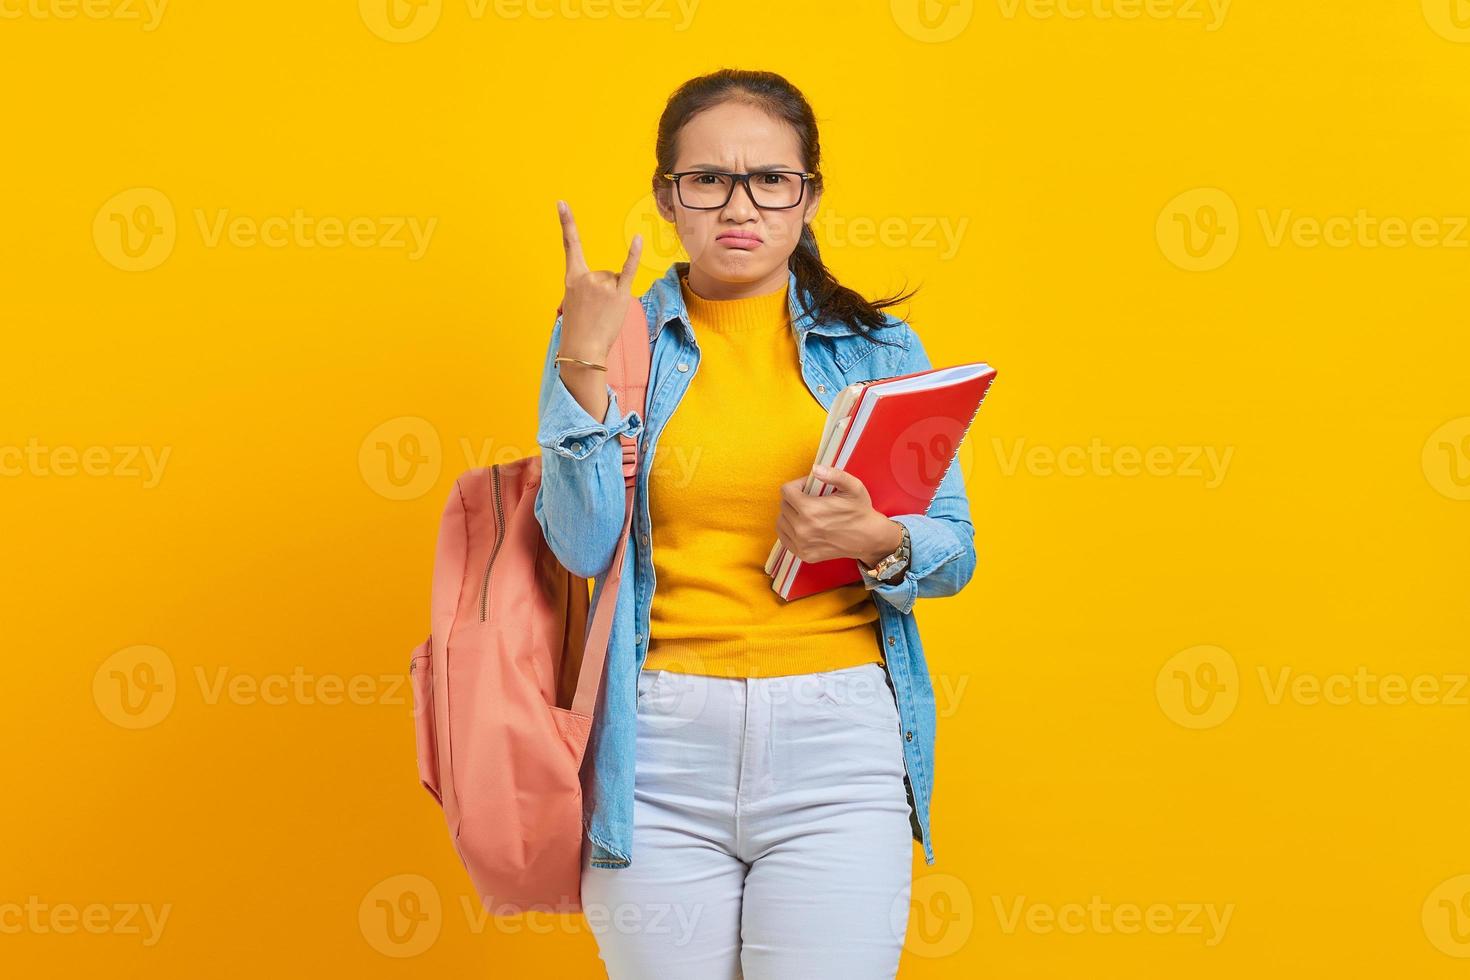 portrait de la belle jeune étudiante asiatique en vêtements denim avec sac à dos tenant un cahier et criant avec une expression folle faisant le symbole du rock avec les mains levées isolé sur fond jaune photo